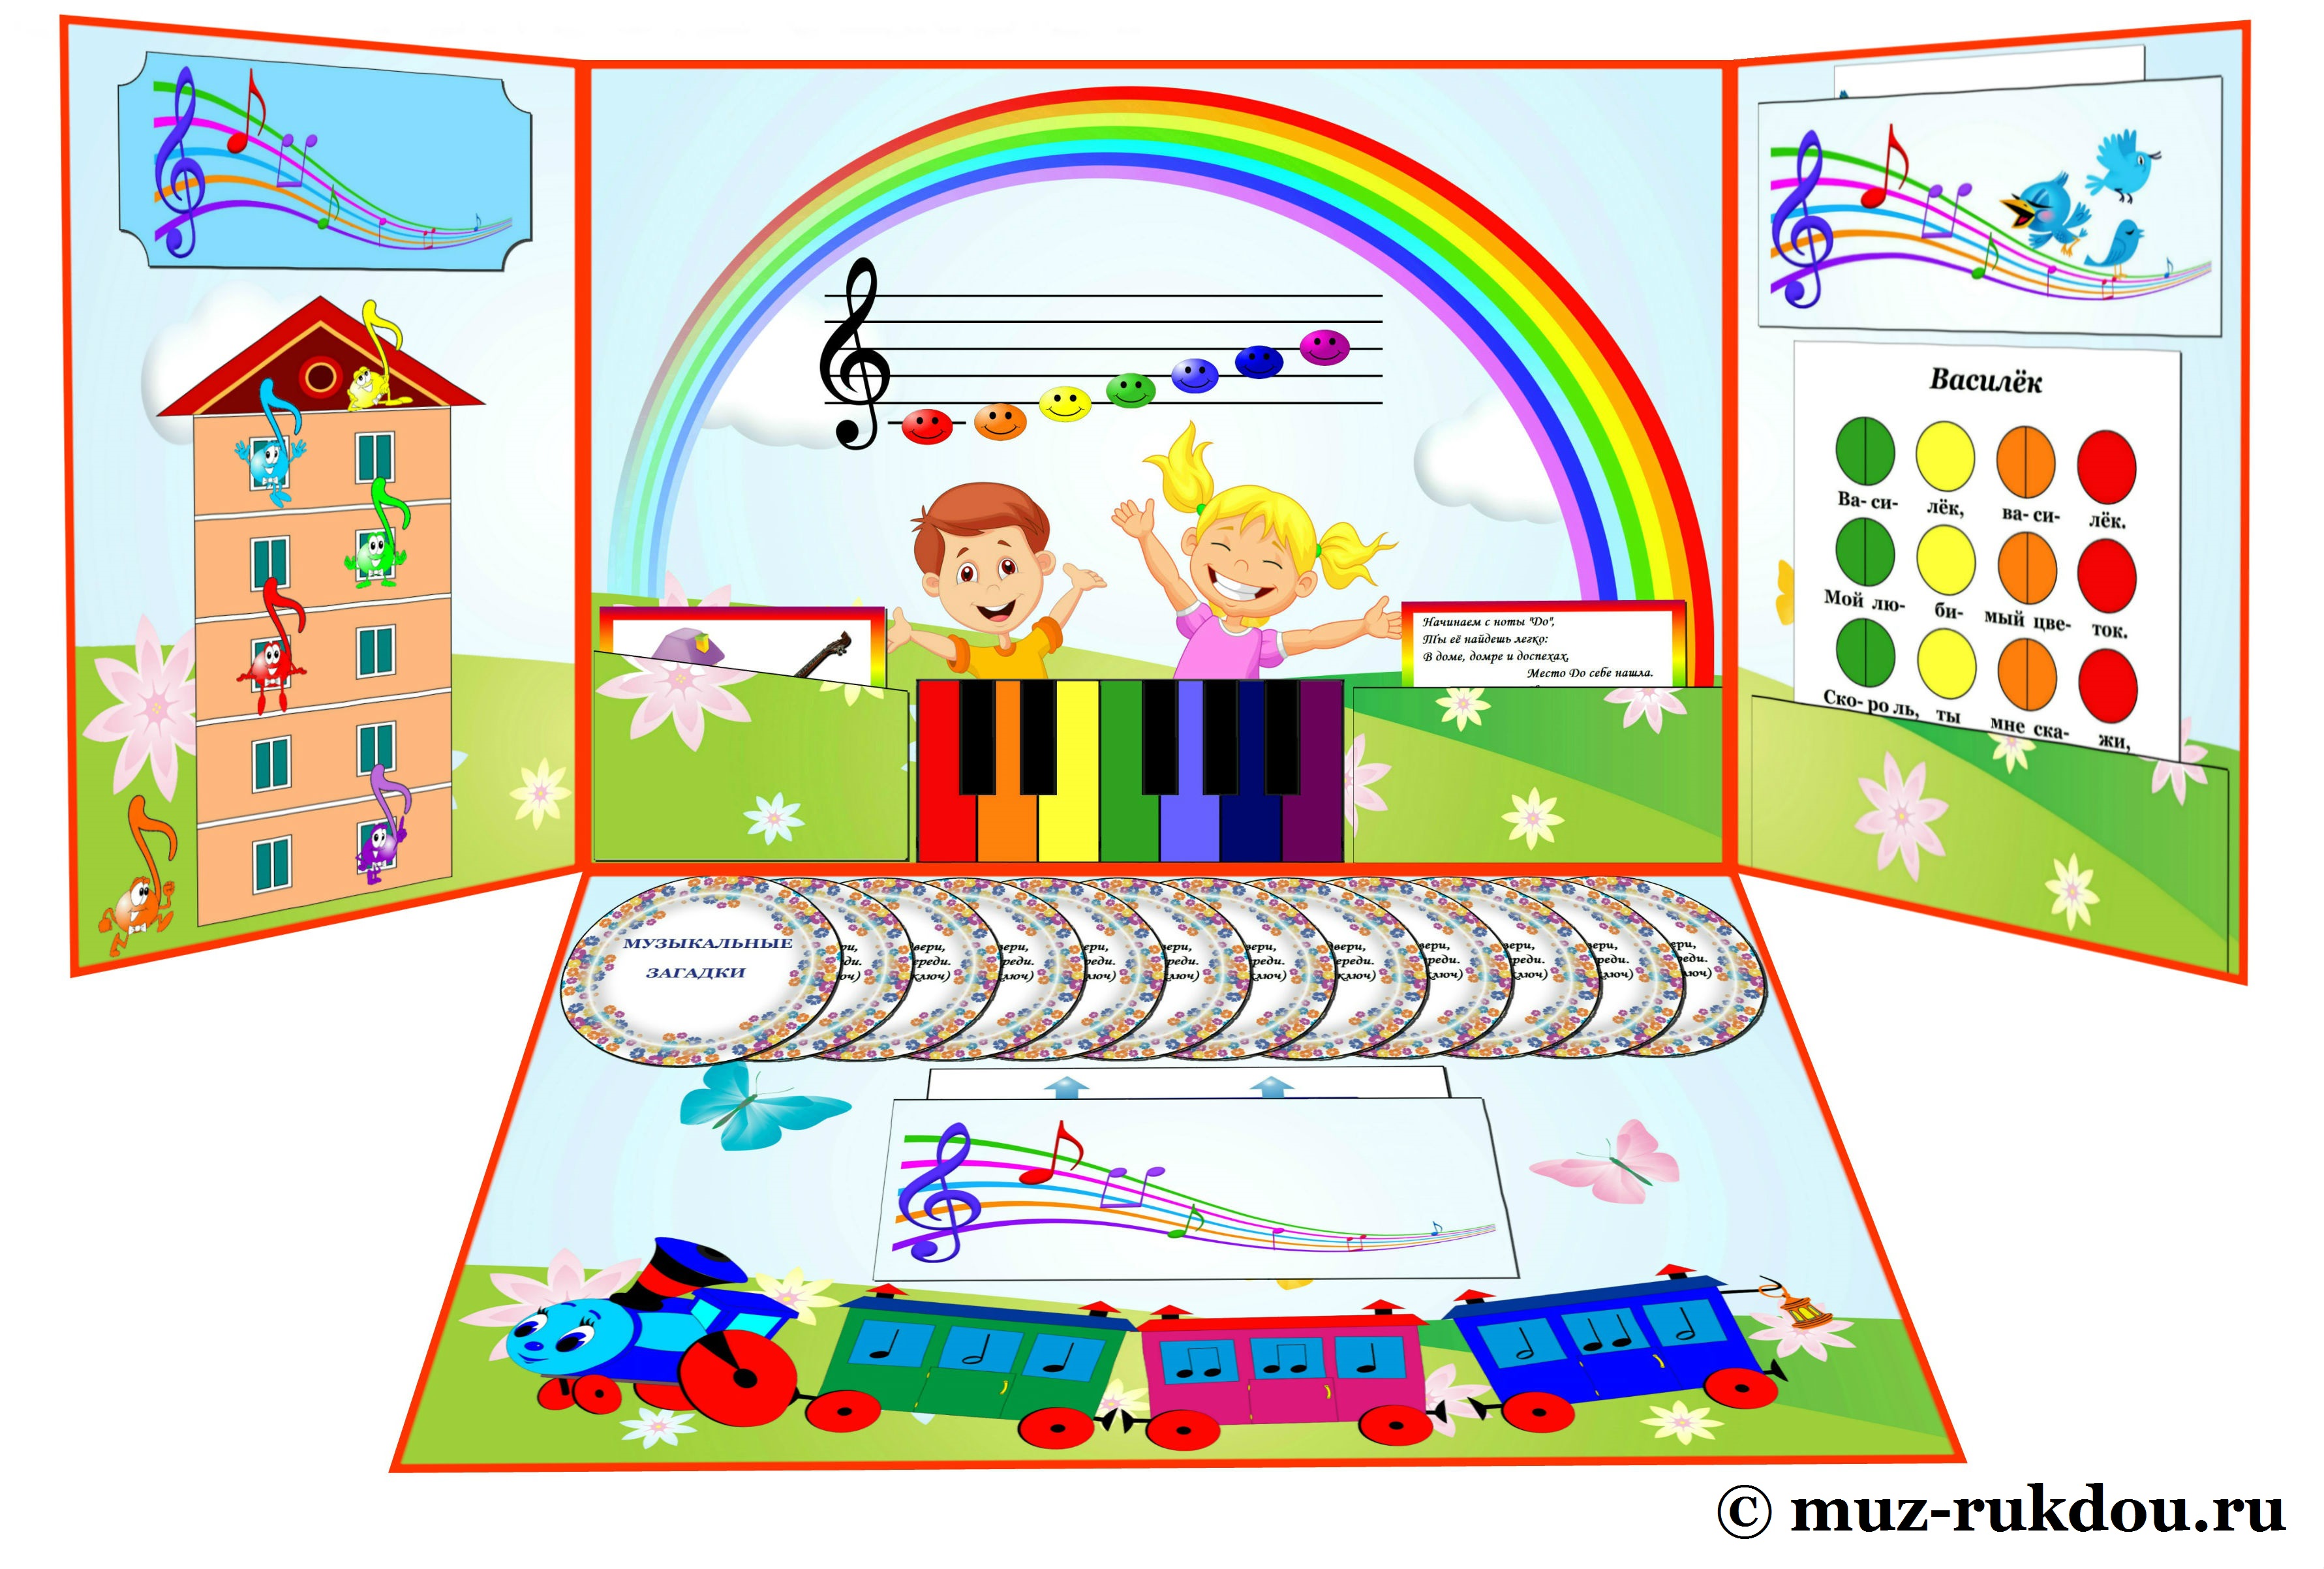 Музыкальная игра домик. Пособия для дошкольников. Музыкальные пособия для детского сада. Развивающие пособия для детского сада. Обучающие пособия для дошкольников.